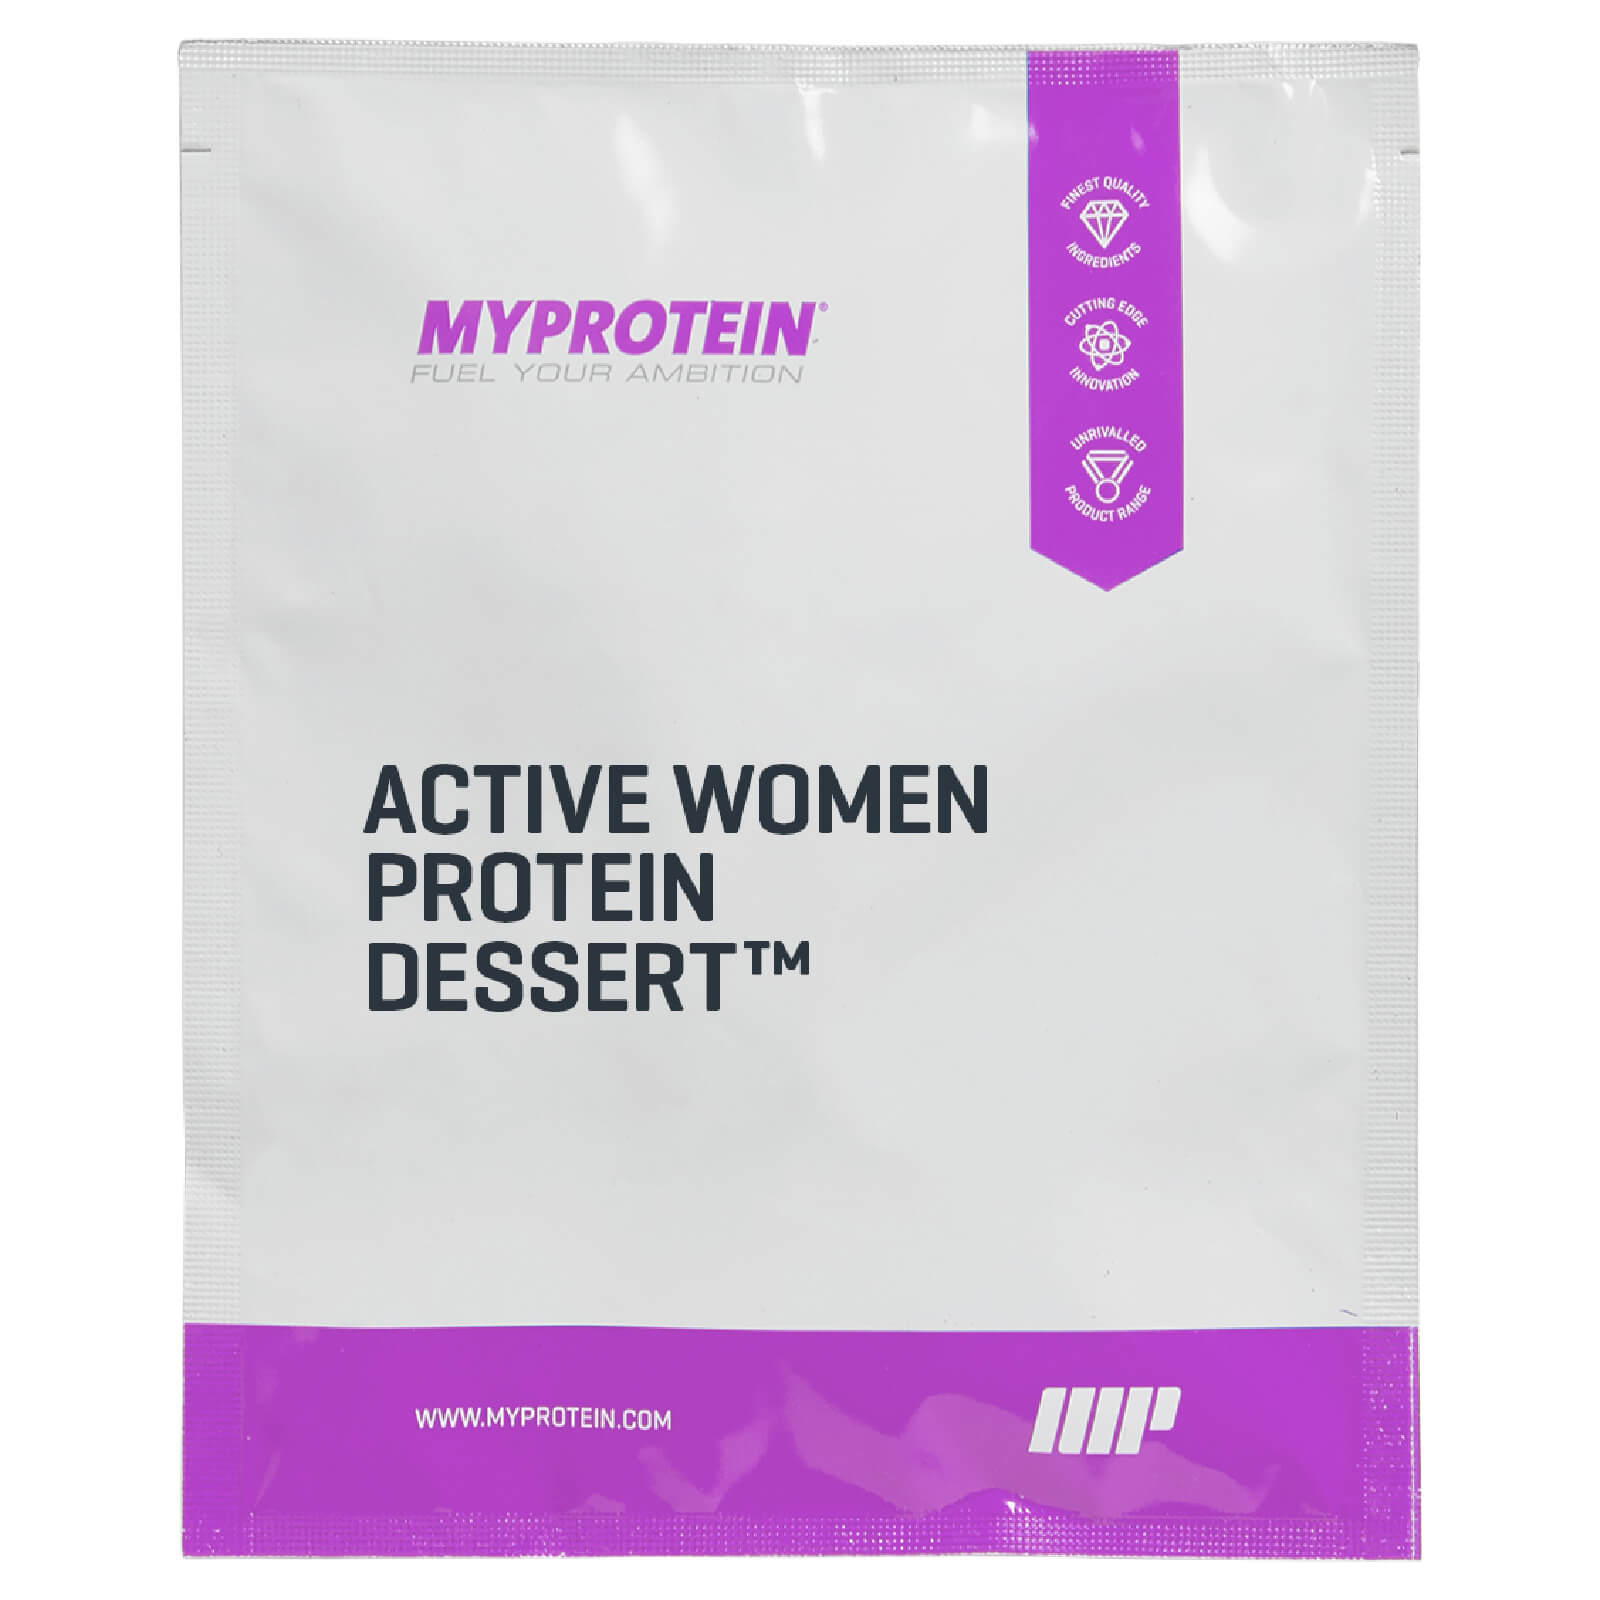 Active Women proteinski desert™ (Sample)